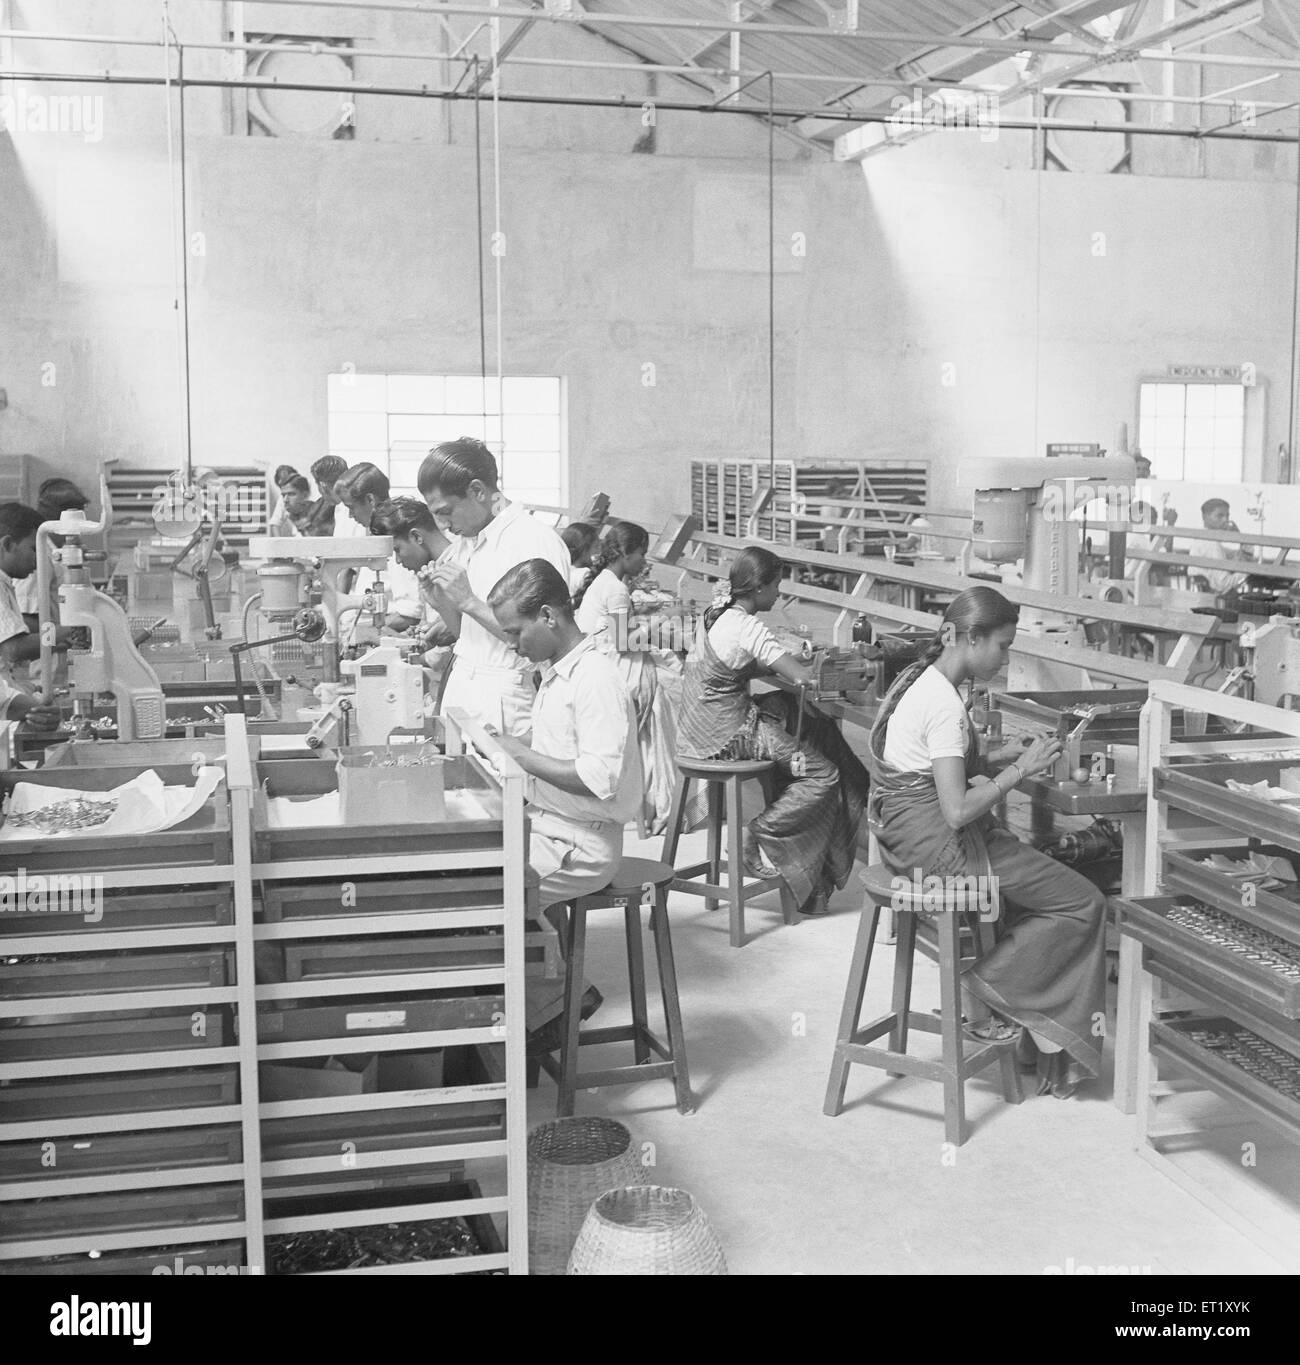 Travailleurs de la ligne de montage dans l'usine de téléphone de fabrication d'instruments téléphoniques à Bangalore Karnataka Inde, années 1950, Asie ; ancien millésime 1900 Banque D'Images